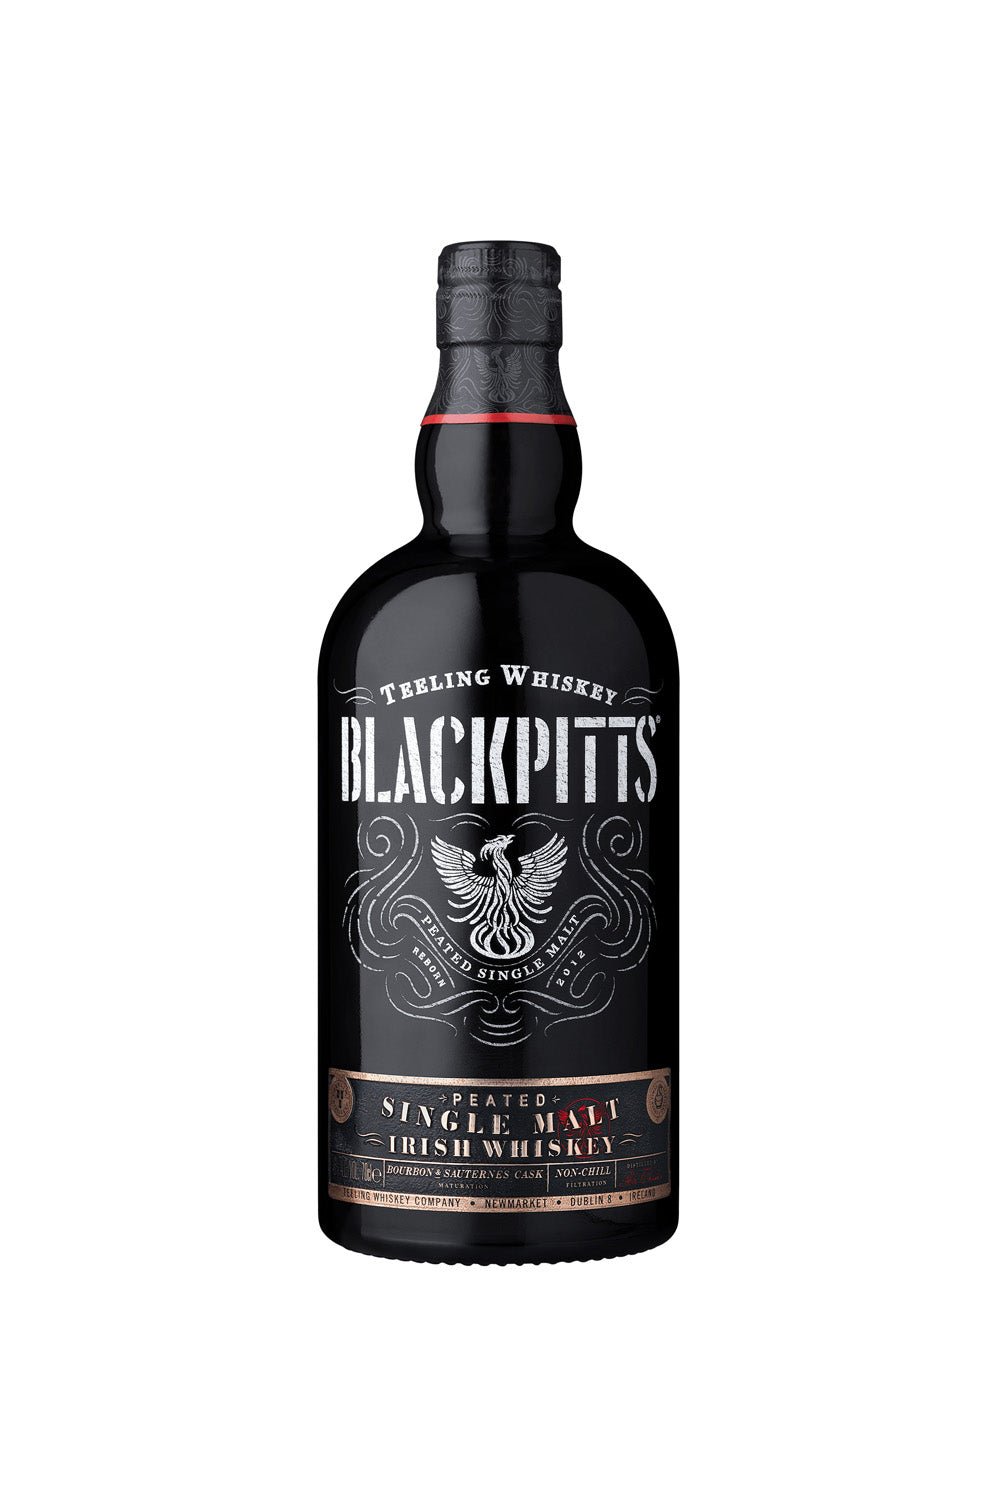 Teeling Blackpitts Peated Irish Single Malt Whiskey 46% vol. 700ml - Maltimore